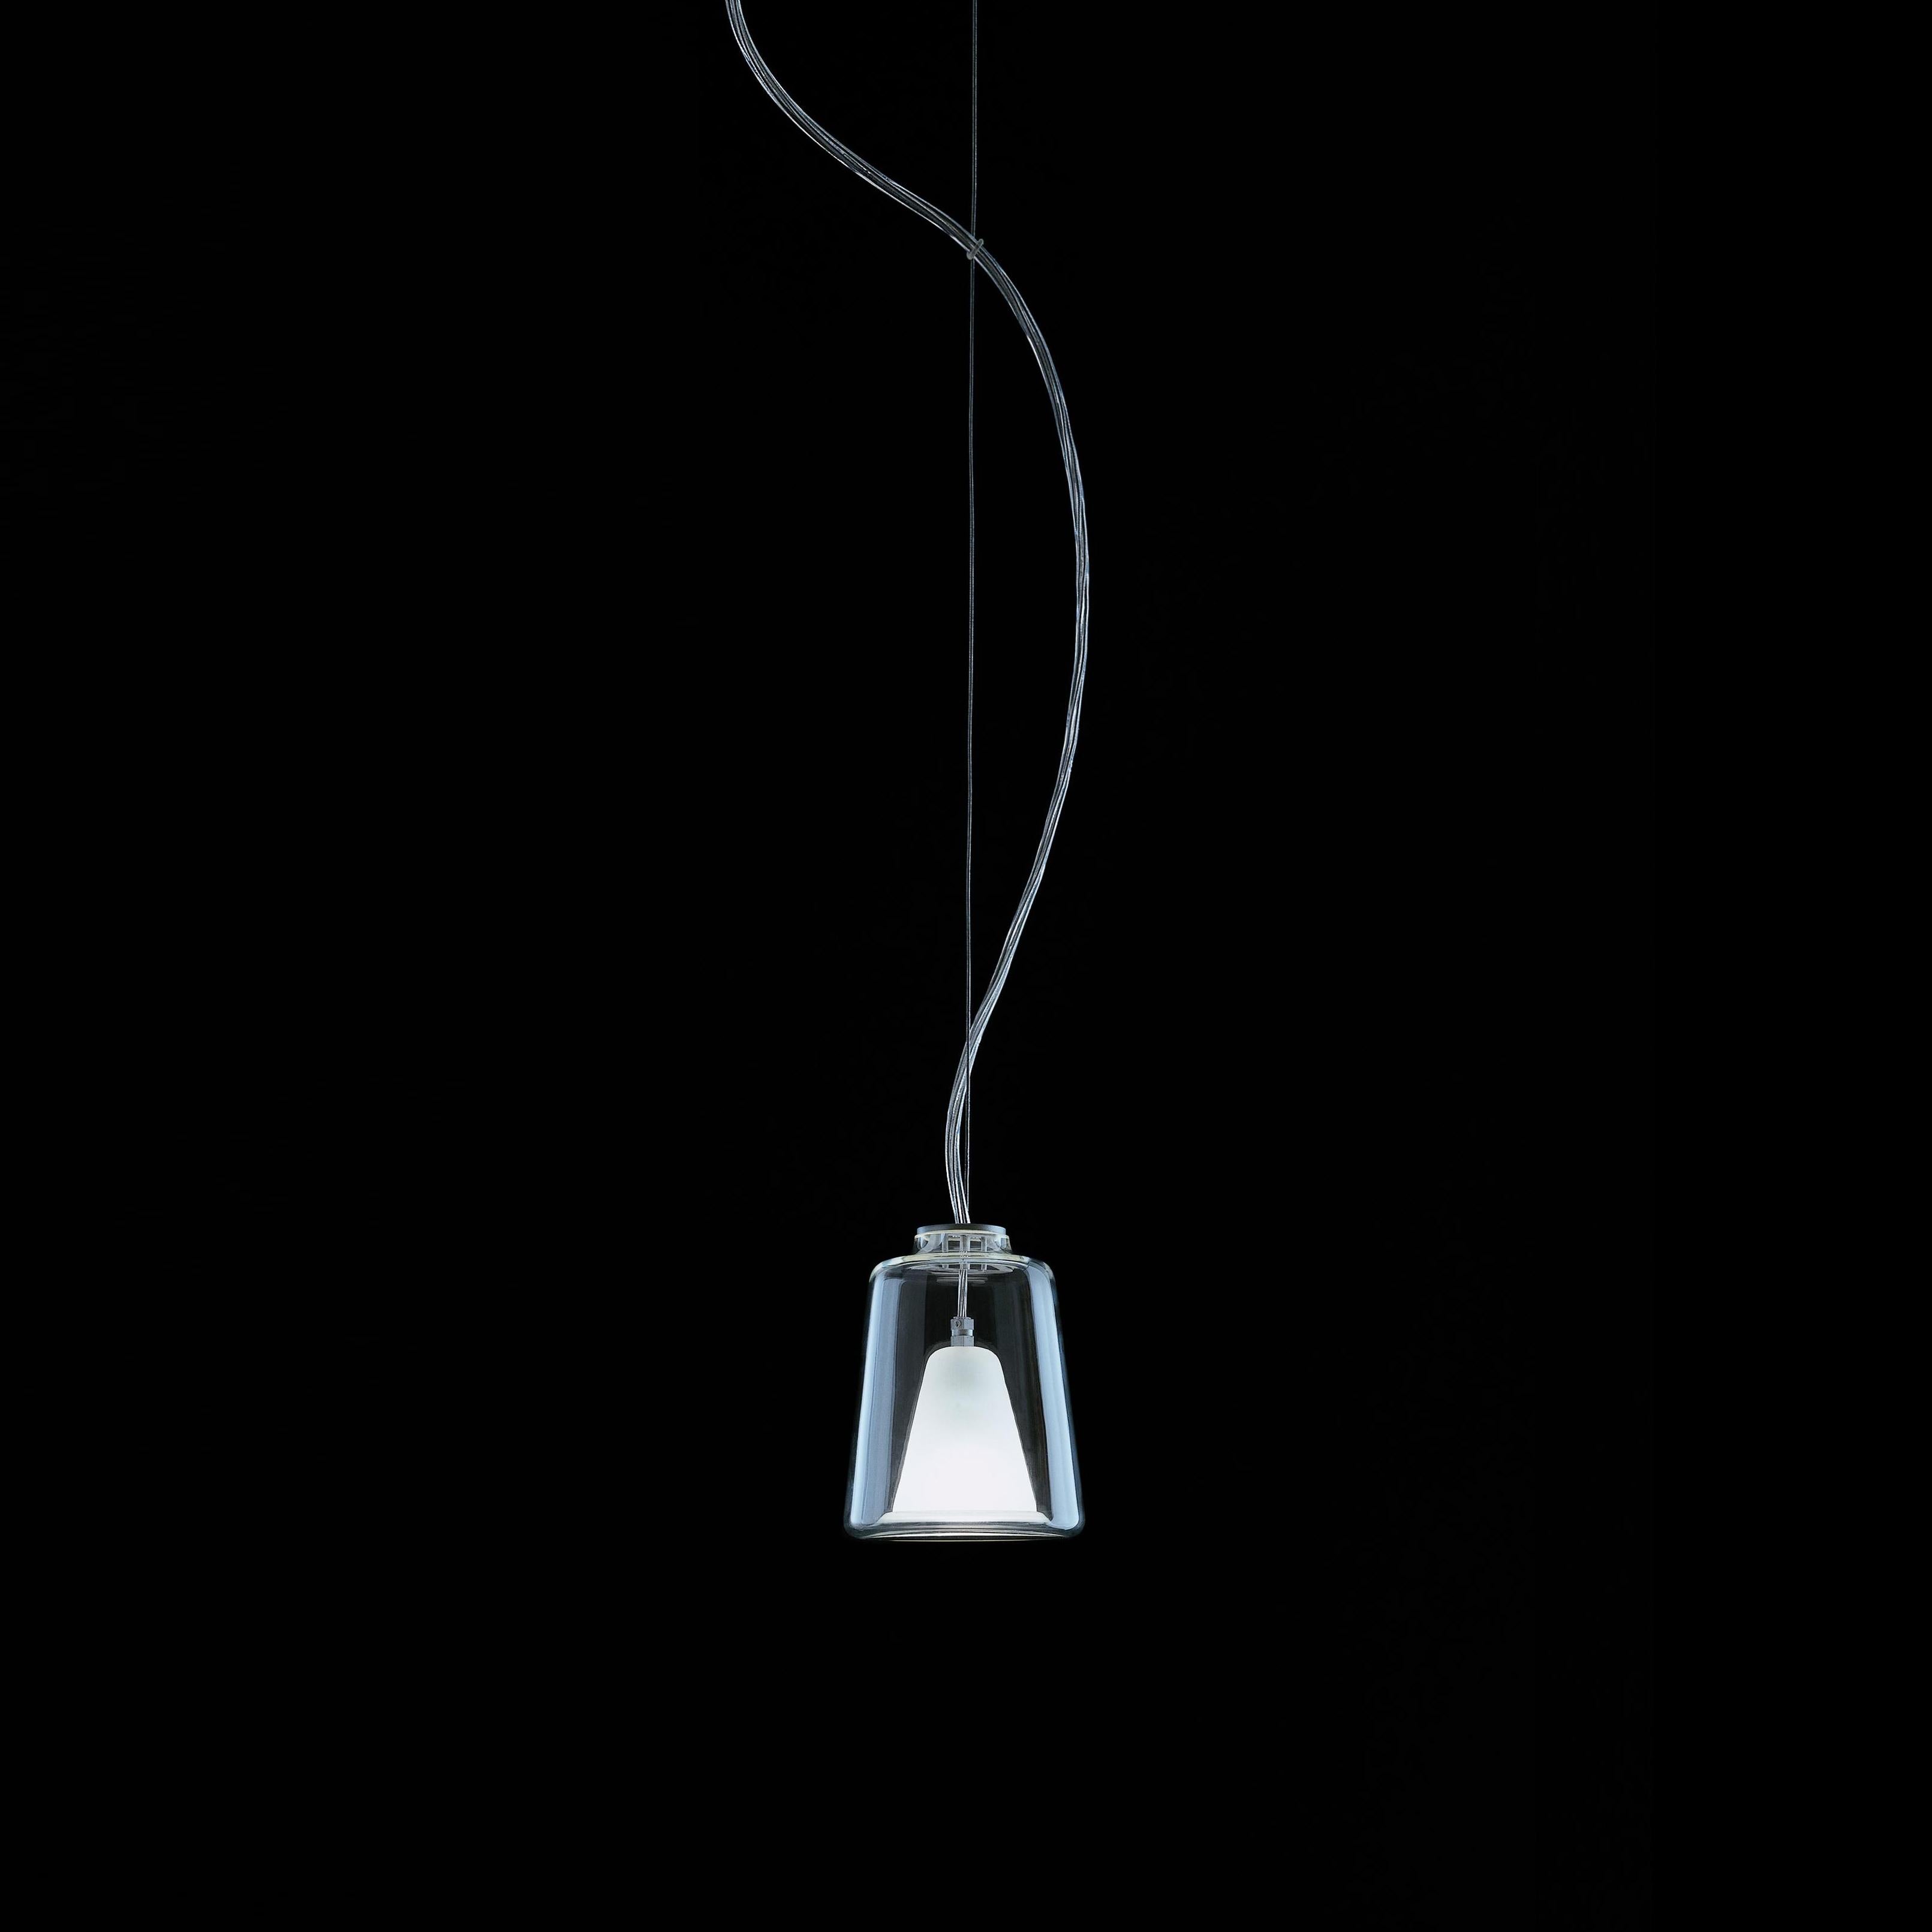 Lampe à suspension 'Lanternina' conçue par Marta Laudani et Marco Romanelli en 1998-2001. Lampe à suspension donnant une lumière diffuse. Diffuseurs en verre de Murano transparent et sablé. Structure métallique anodisée vitrée. Fabriqué par Oluce,